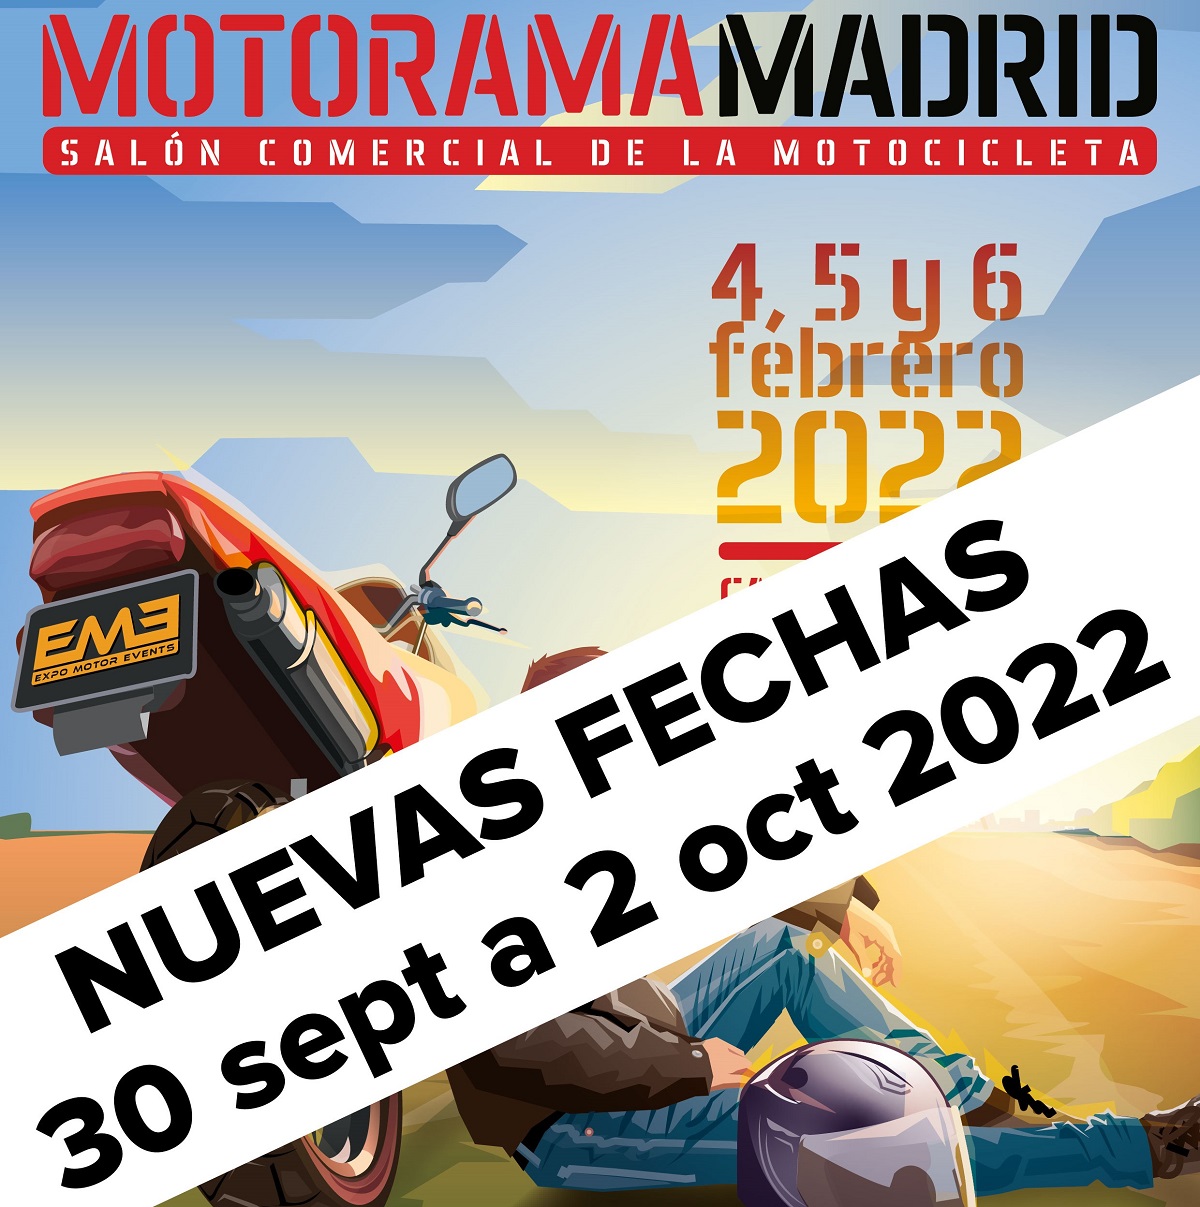 El salón Motorama Madrid 2022 aplazado por COVID hasta el 30 de septiembre